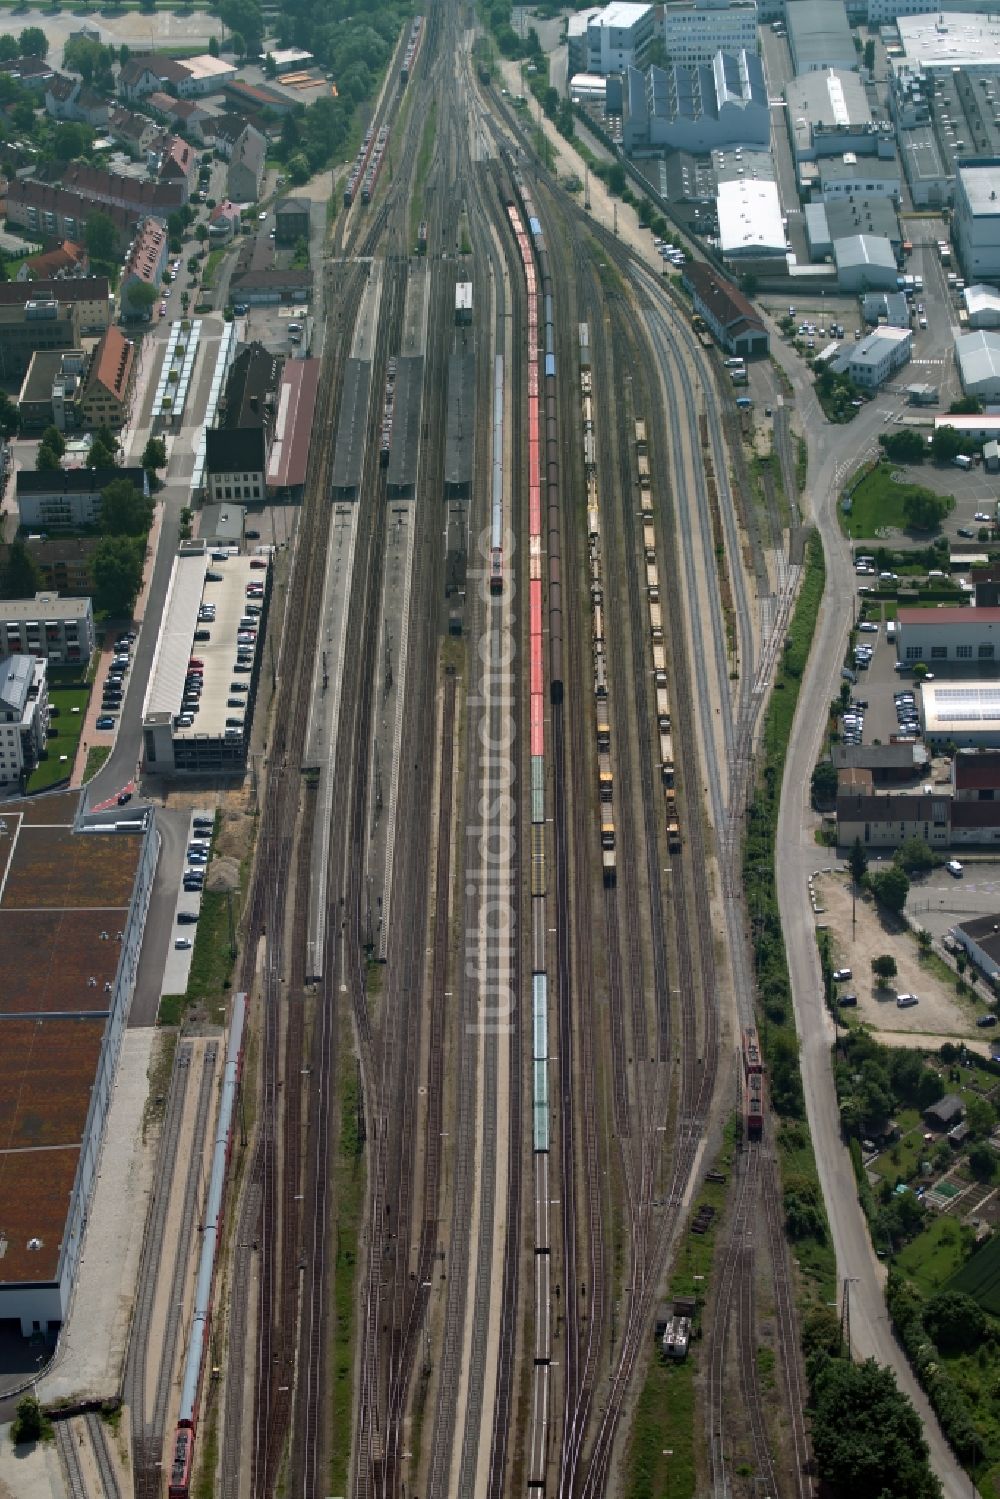 Donauwörth von oben - Gleisverlauf, Bahnhofsgebäude und Rangierbahnhof der Deutschen Bahn in Donauwörth im Bundesland Bayern, Deutschland